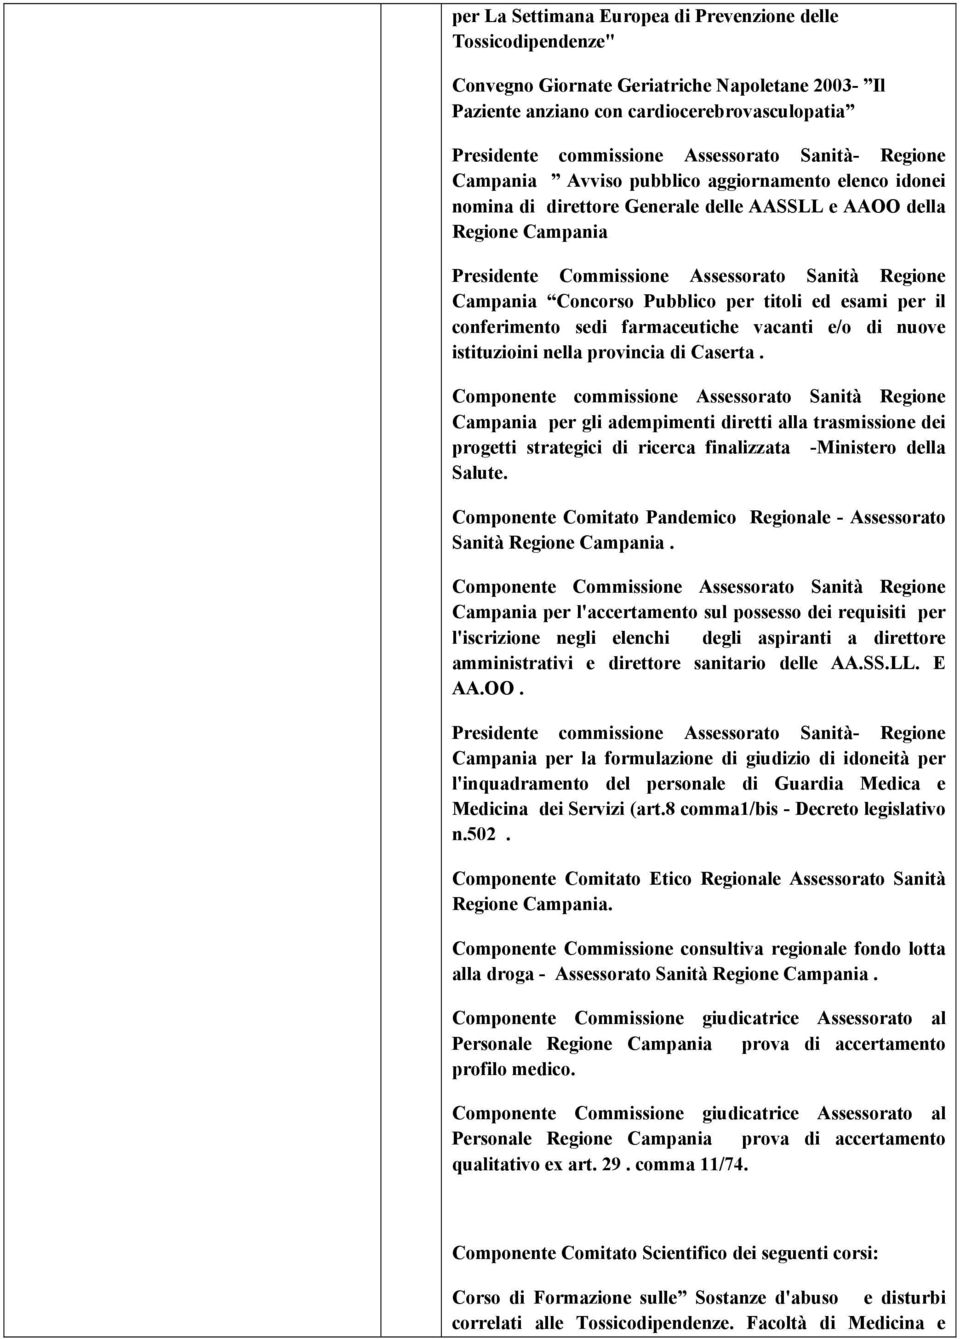 Concorso Pubblico per titoli ed esami per il conferimento sedi farmaceutiche vacanti e/o di nuove istituzioini nella provincia di Caserta.